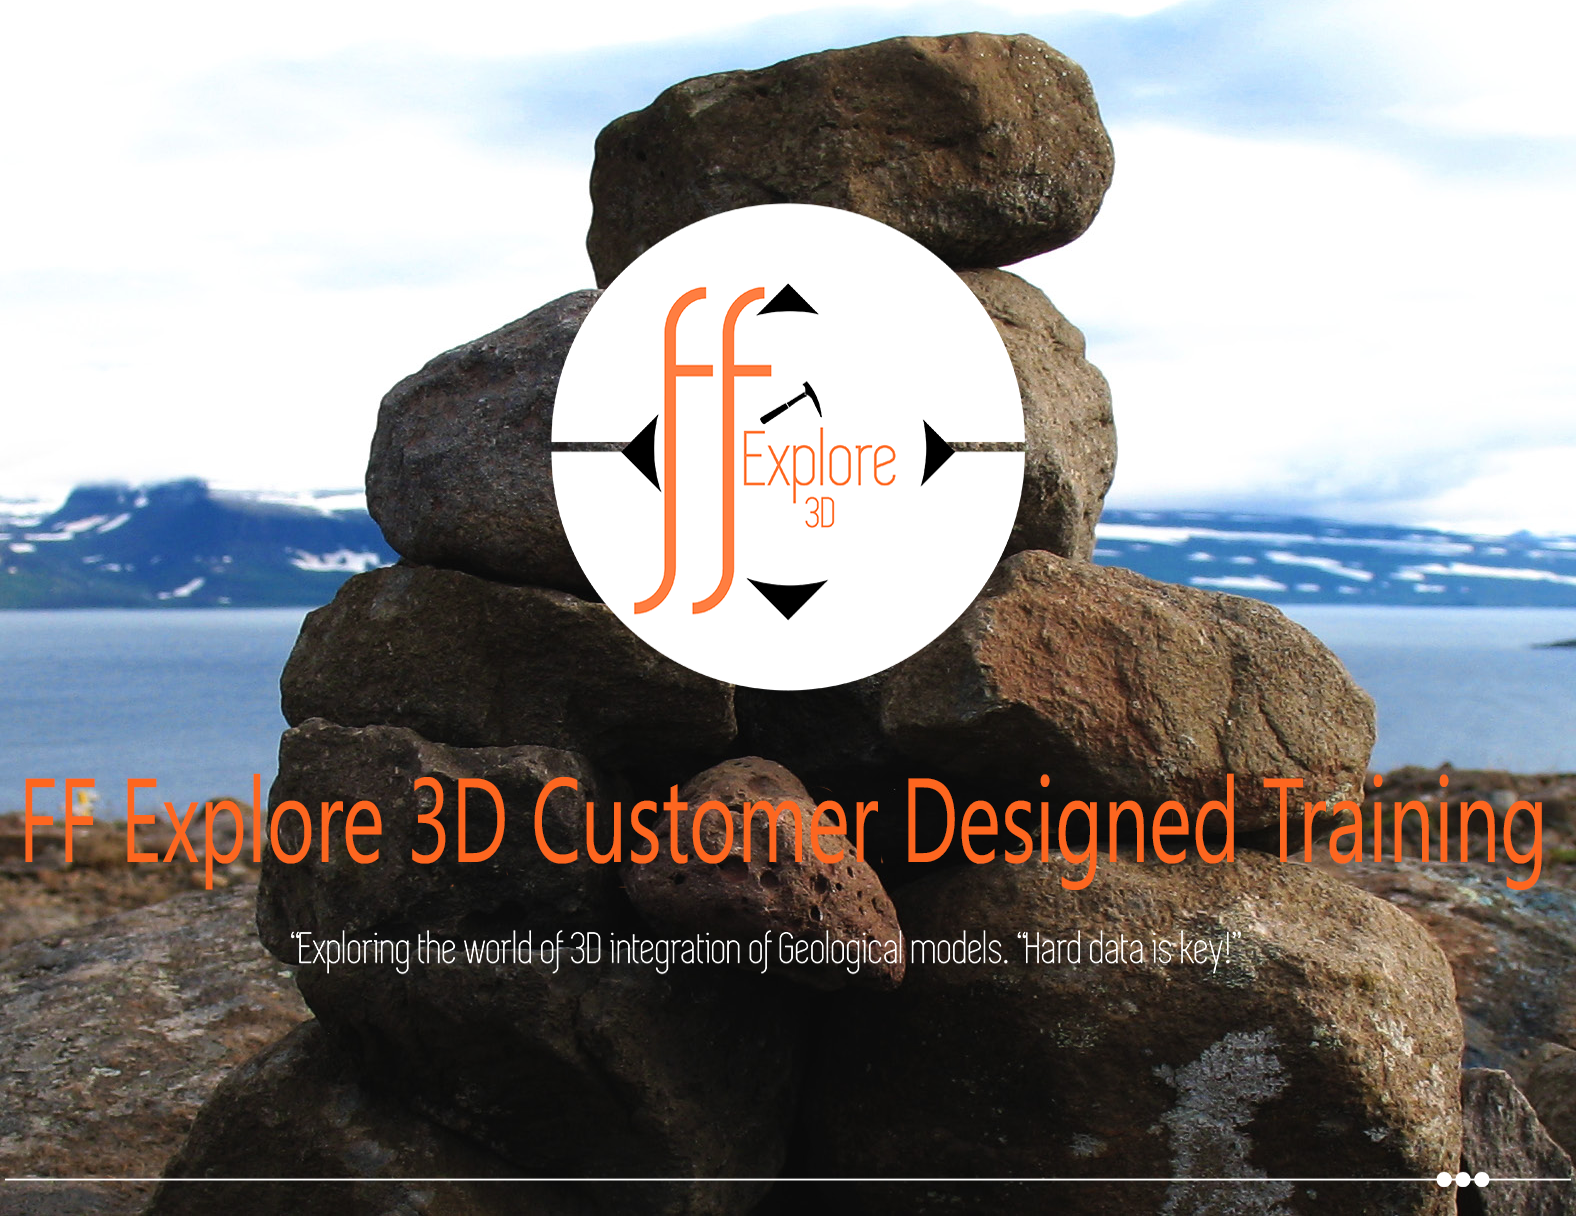 FF Explore 3D logo